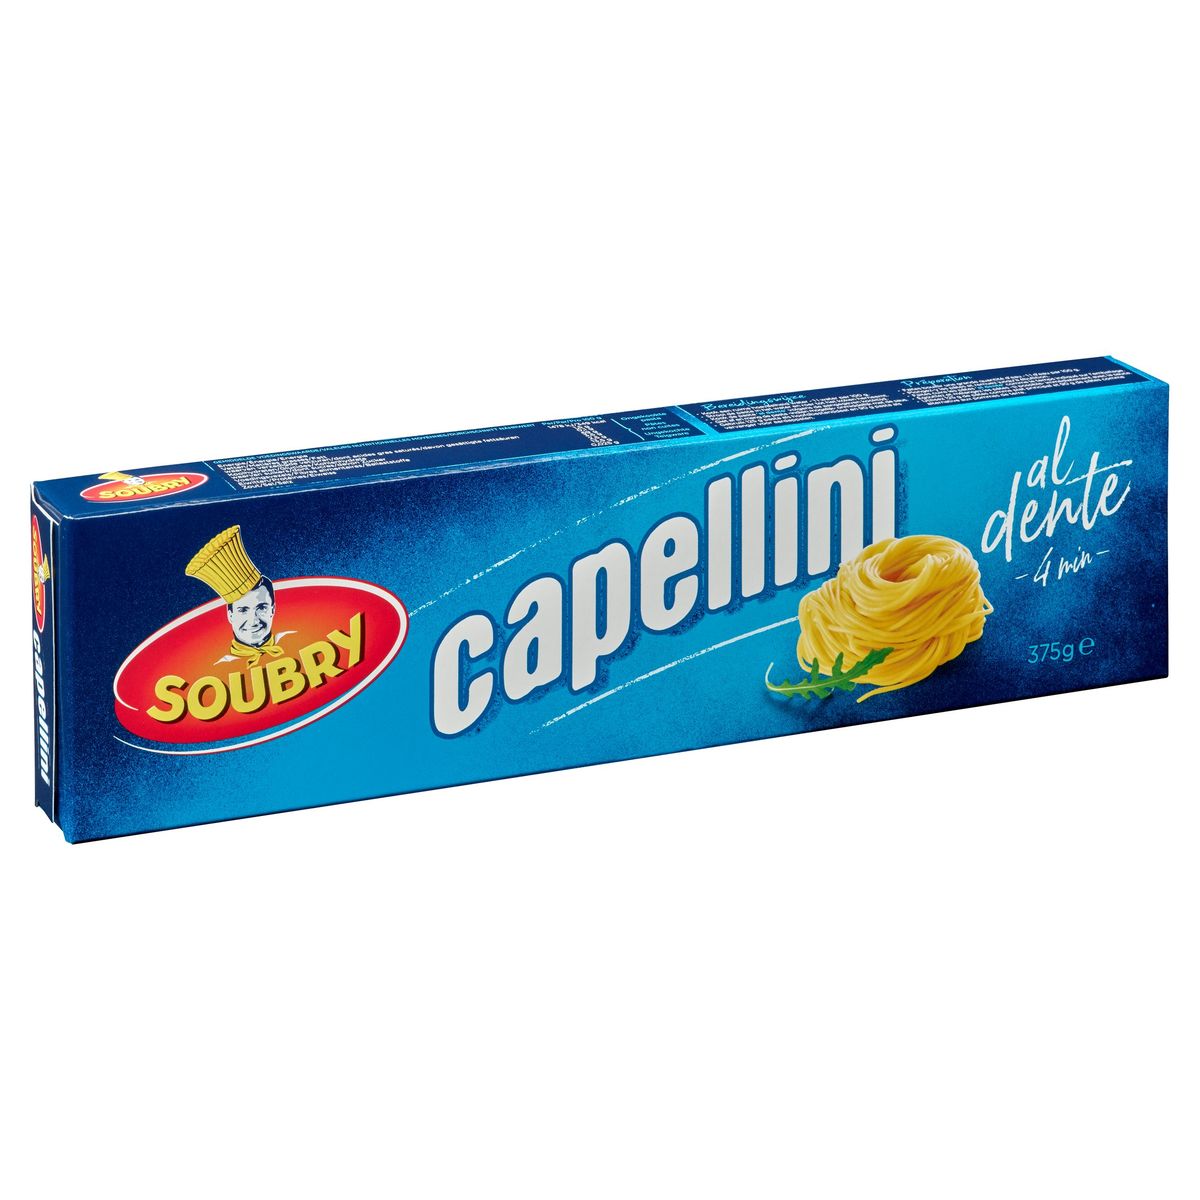 Soubry Pasta Capellini 375g